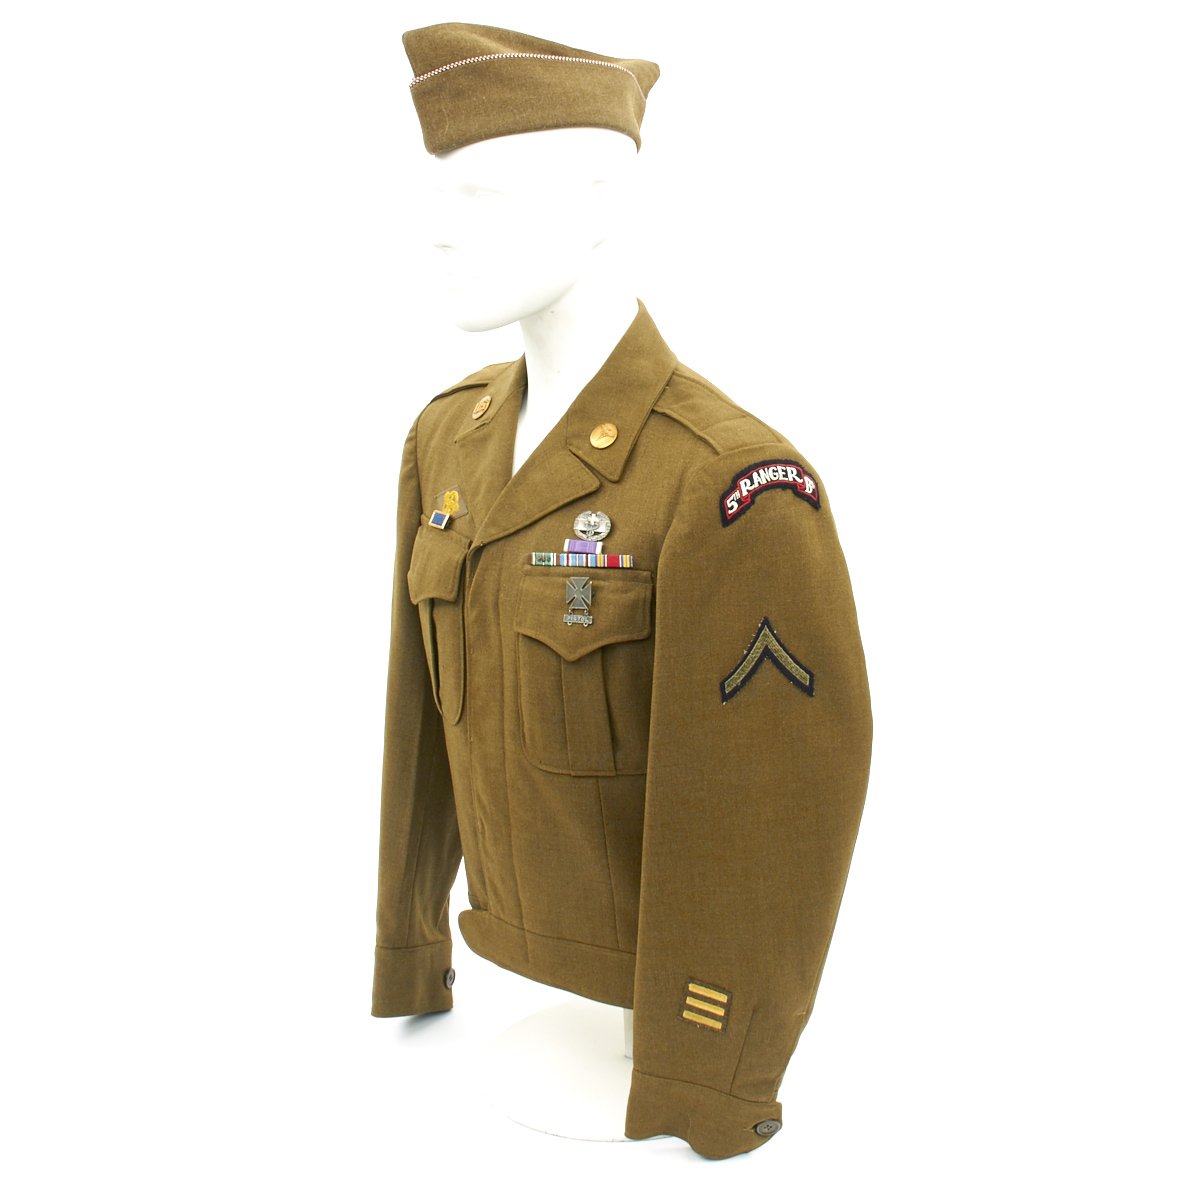 ww2 army ranger uniform